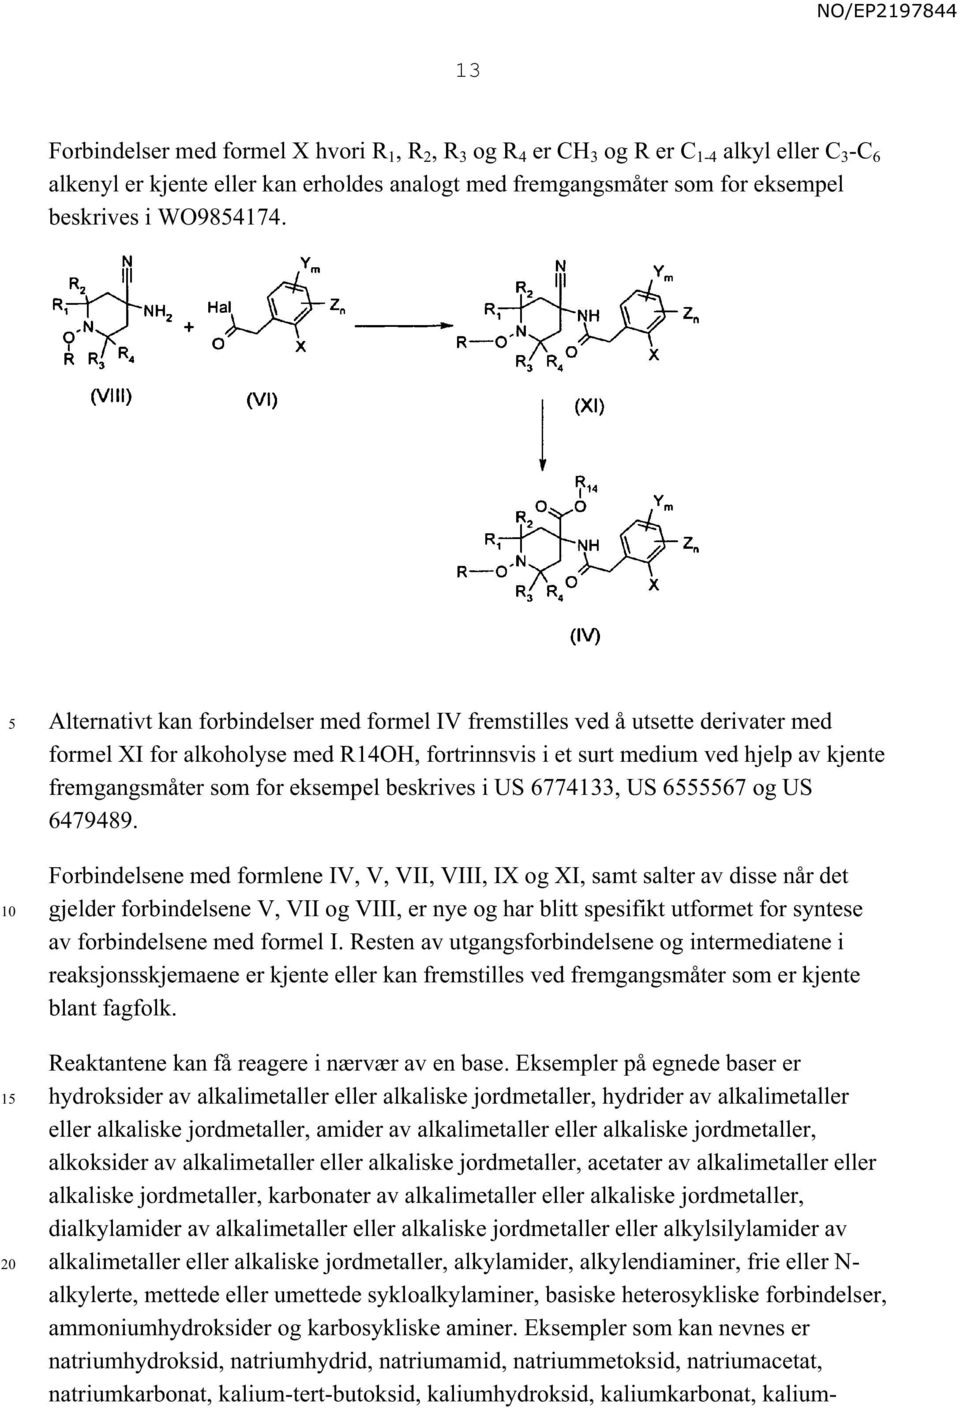 1 Alternativt kan forbindelser med formel IV fremstilles ved å utsette derivater med formel XI for alkoholyse med R14OH, fortrinnsvis i et surt medium ved hjelp av kjente fremgangsmåter som for